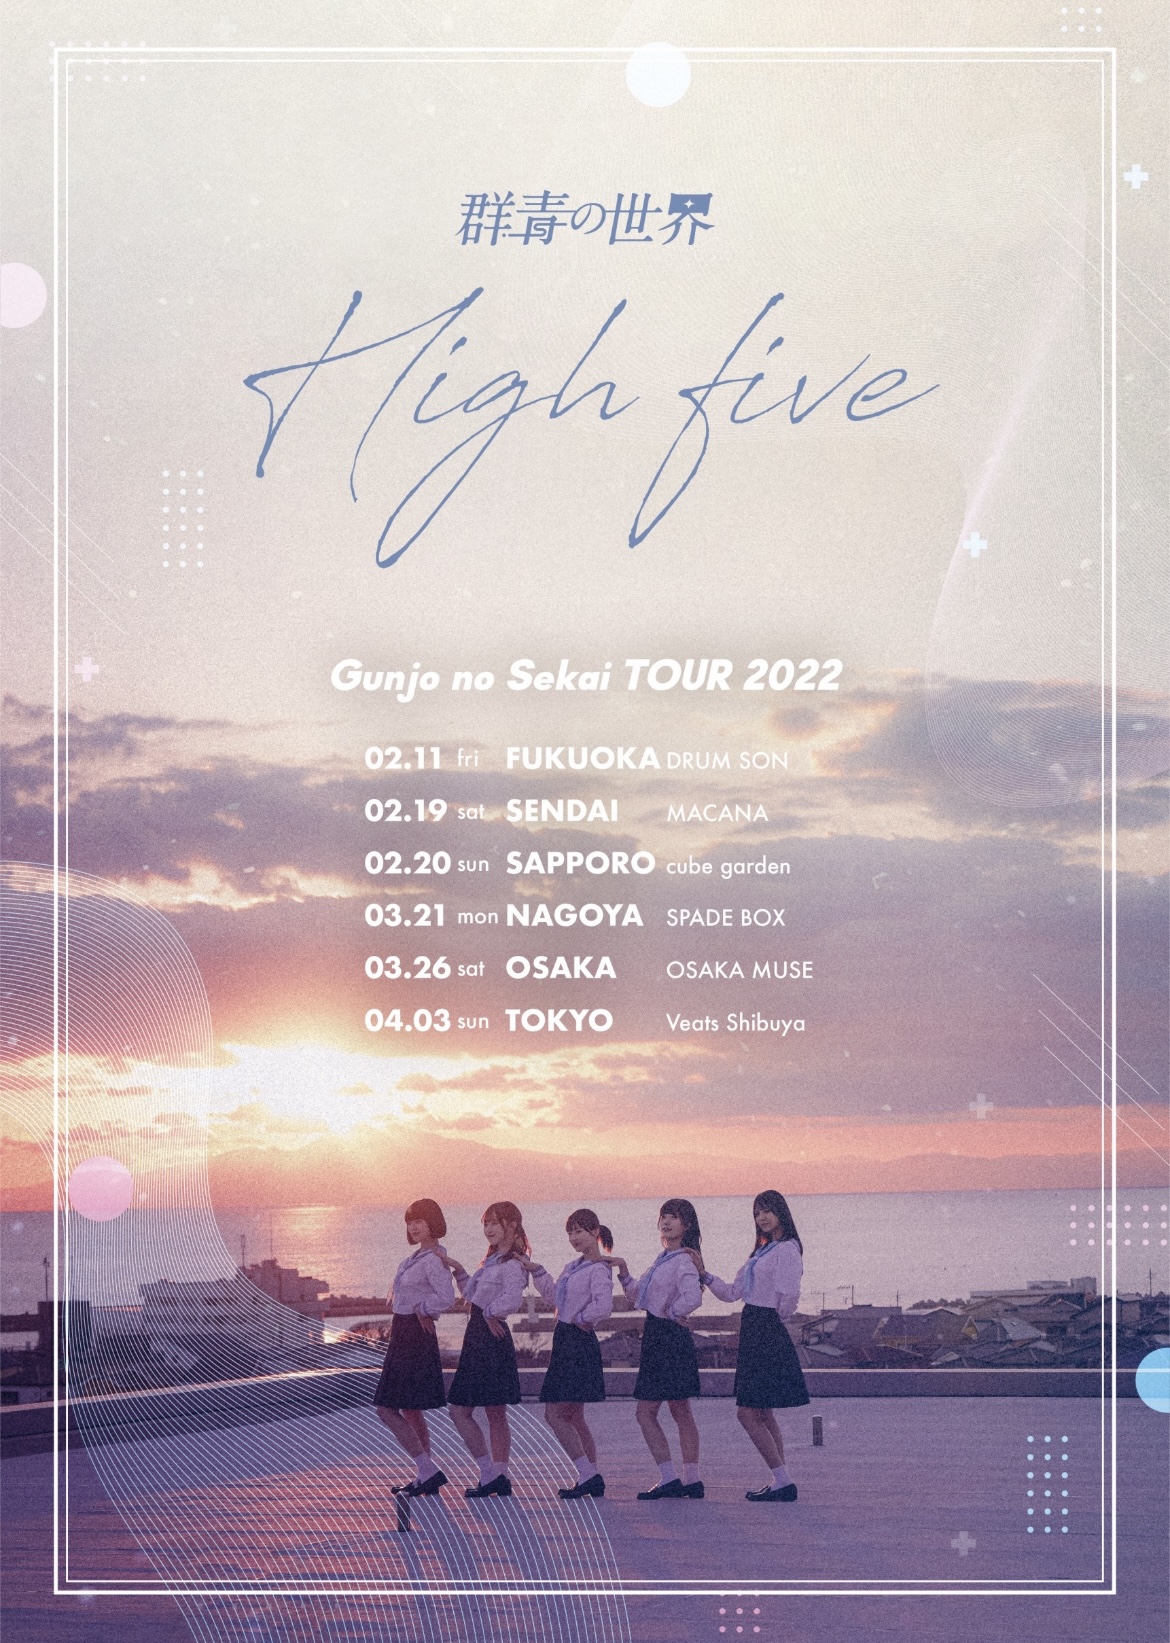 群青の世界 全国ツアー「High five」大阪公演